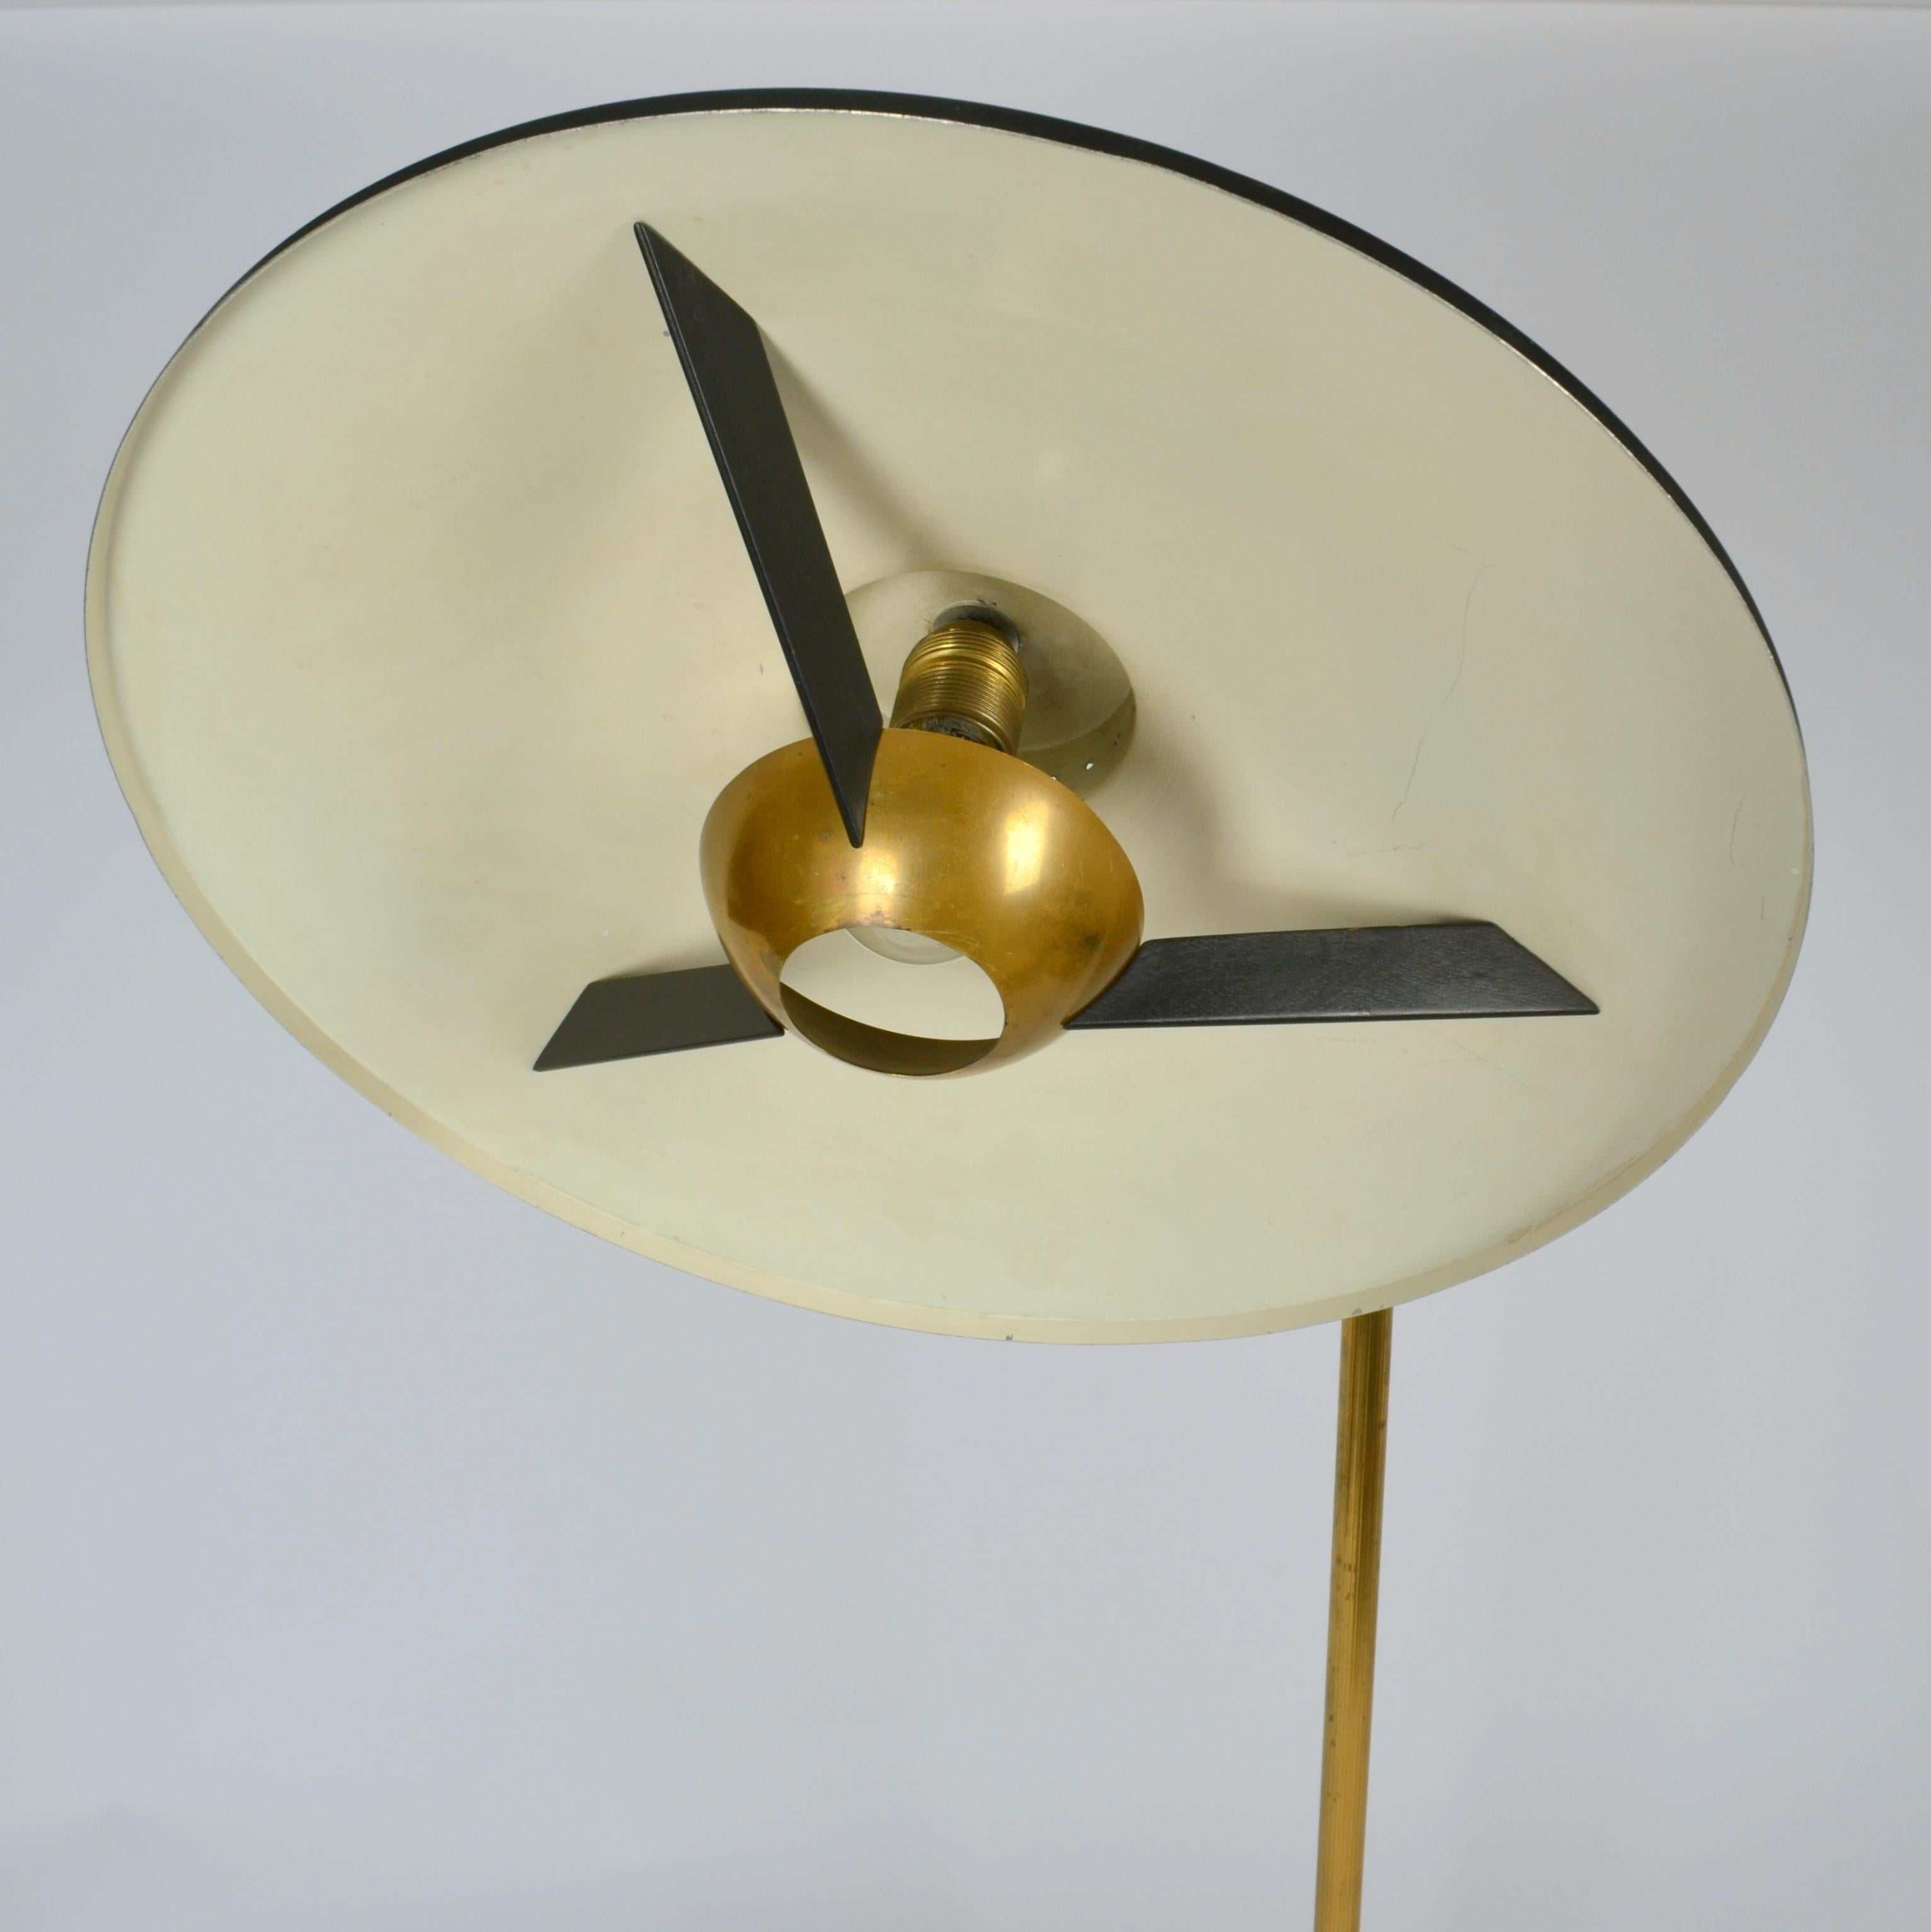 Italian Swing Arm Brass Floor Lamp, Original Black Shade, 1950's Stilnovo Style For Sale 4